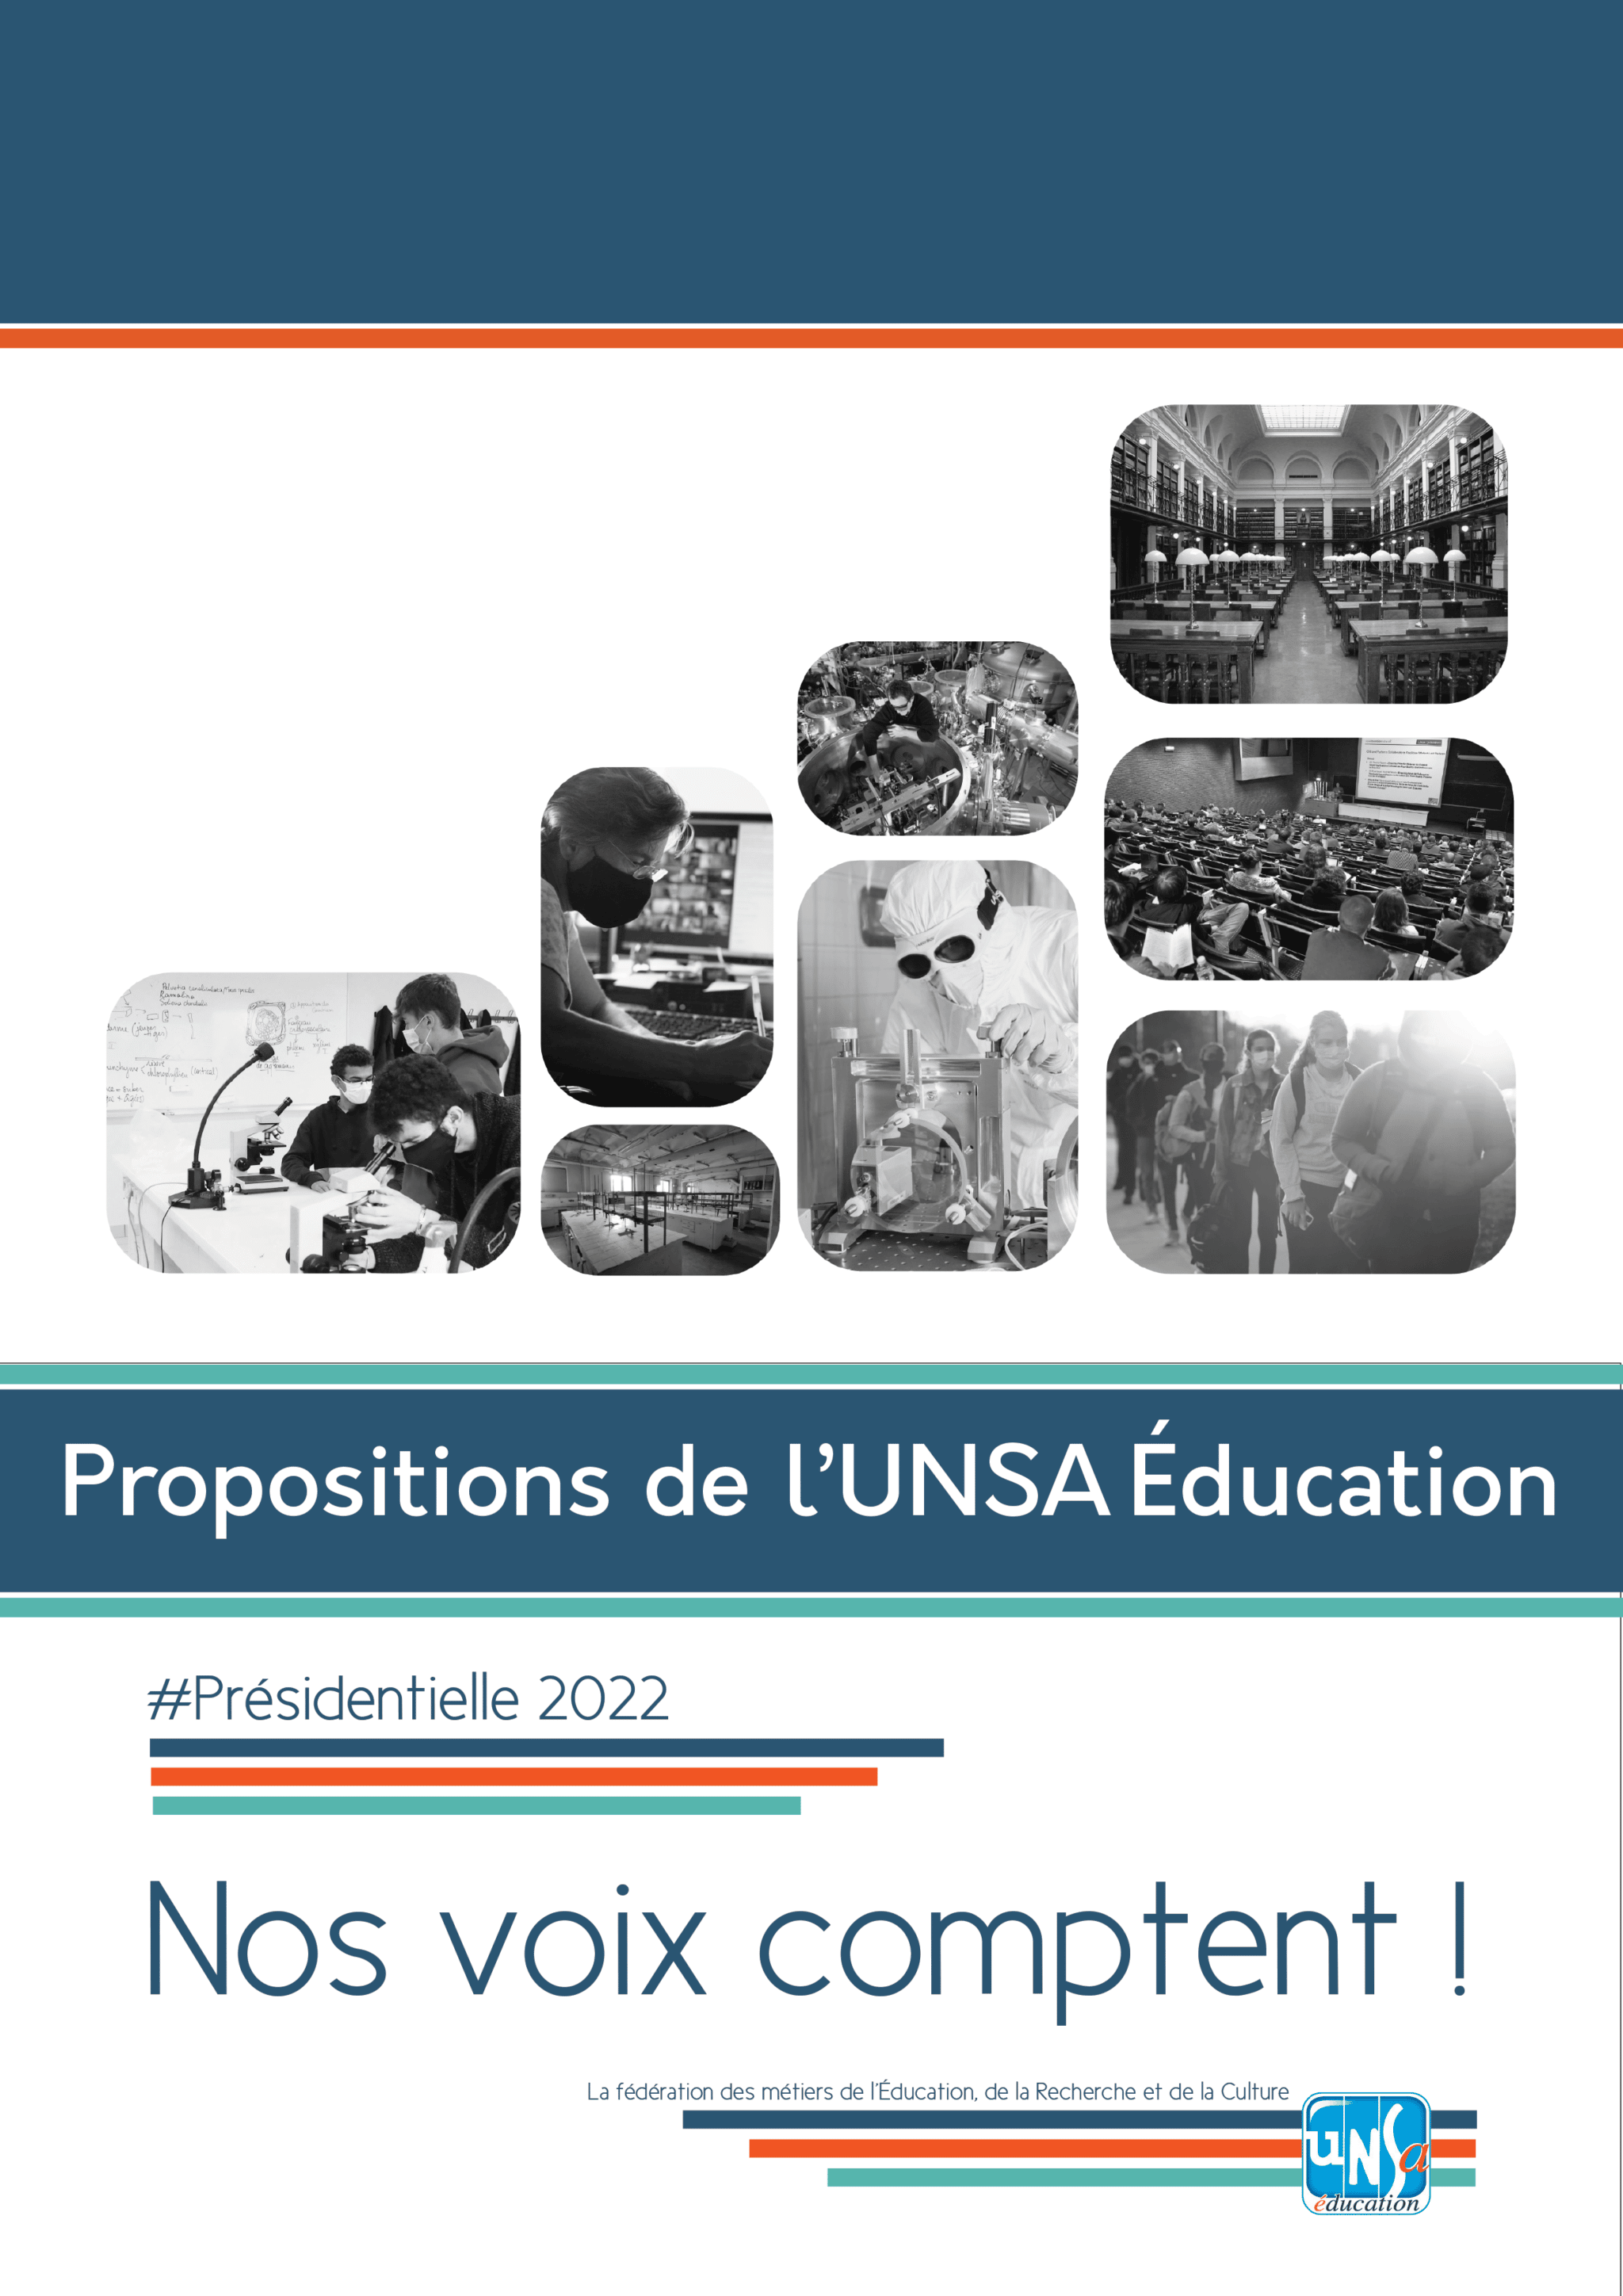 Présidentielle 2022 : les propositions de l’UNSA Éducation pour l’Enseignement Supérieur et la Recherche